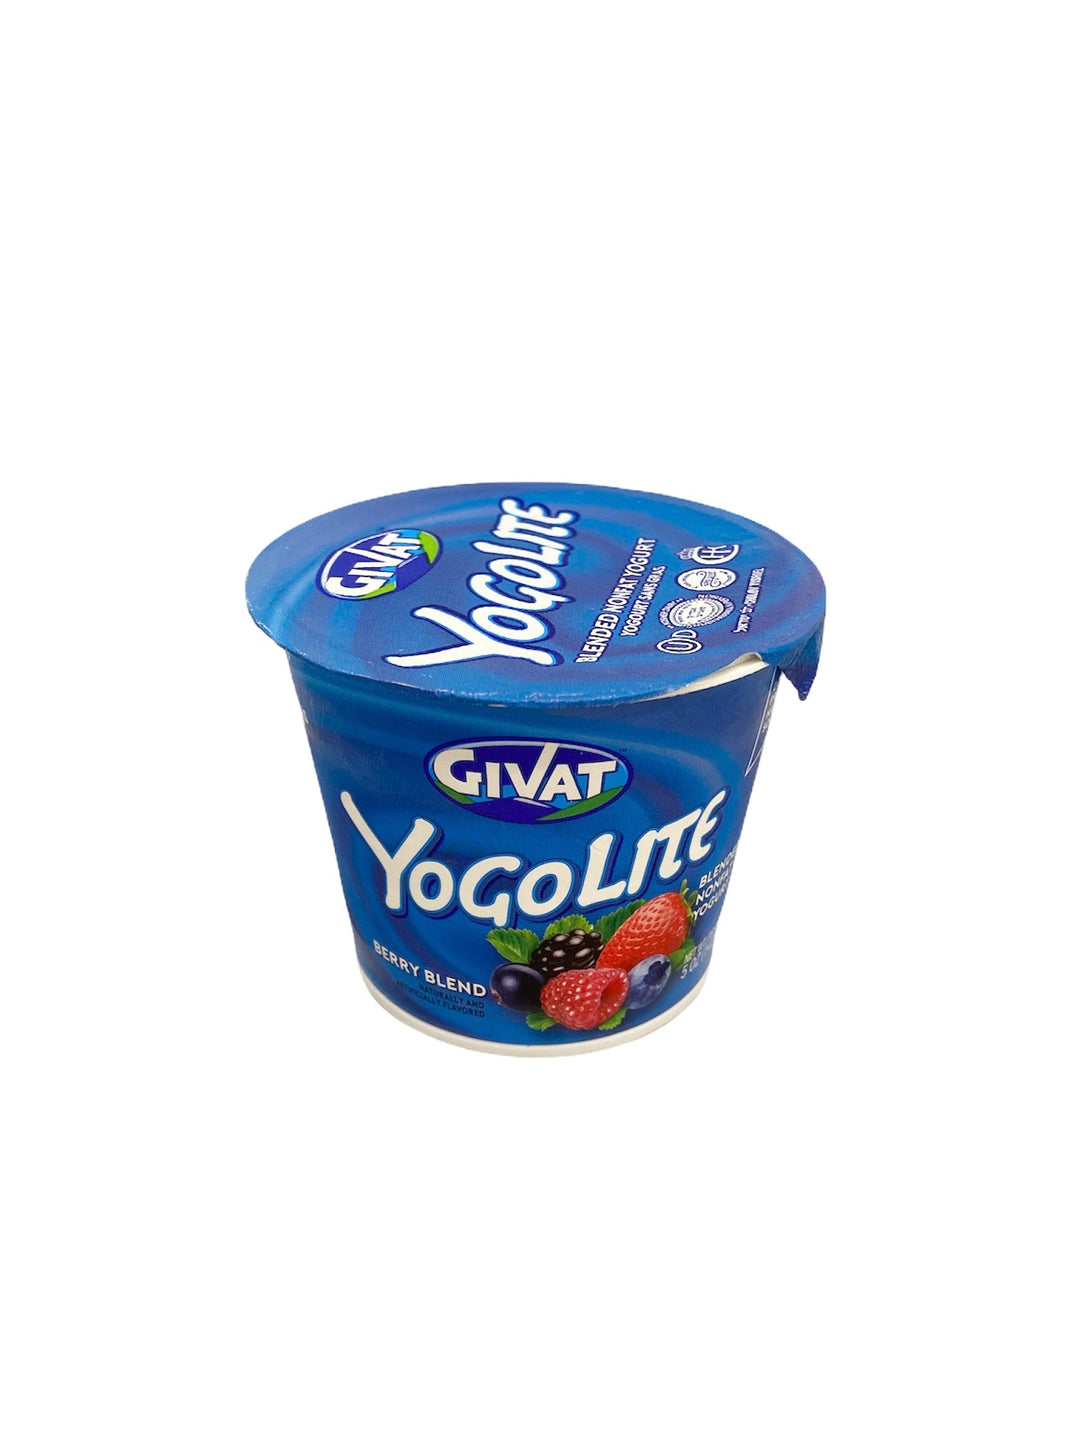 Givat, Yogolite Nonfat Strawberry Yogurt 5 Oz